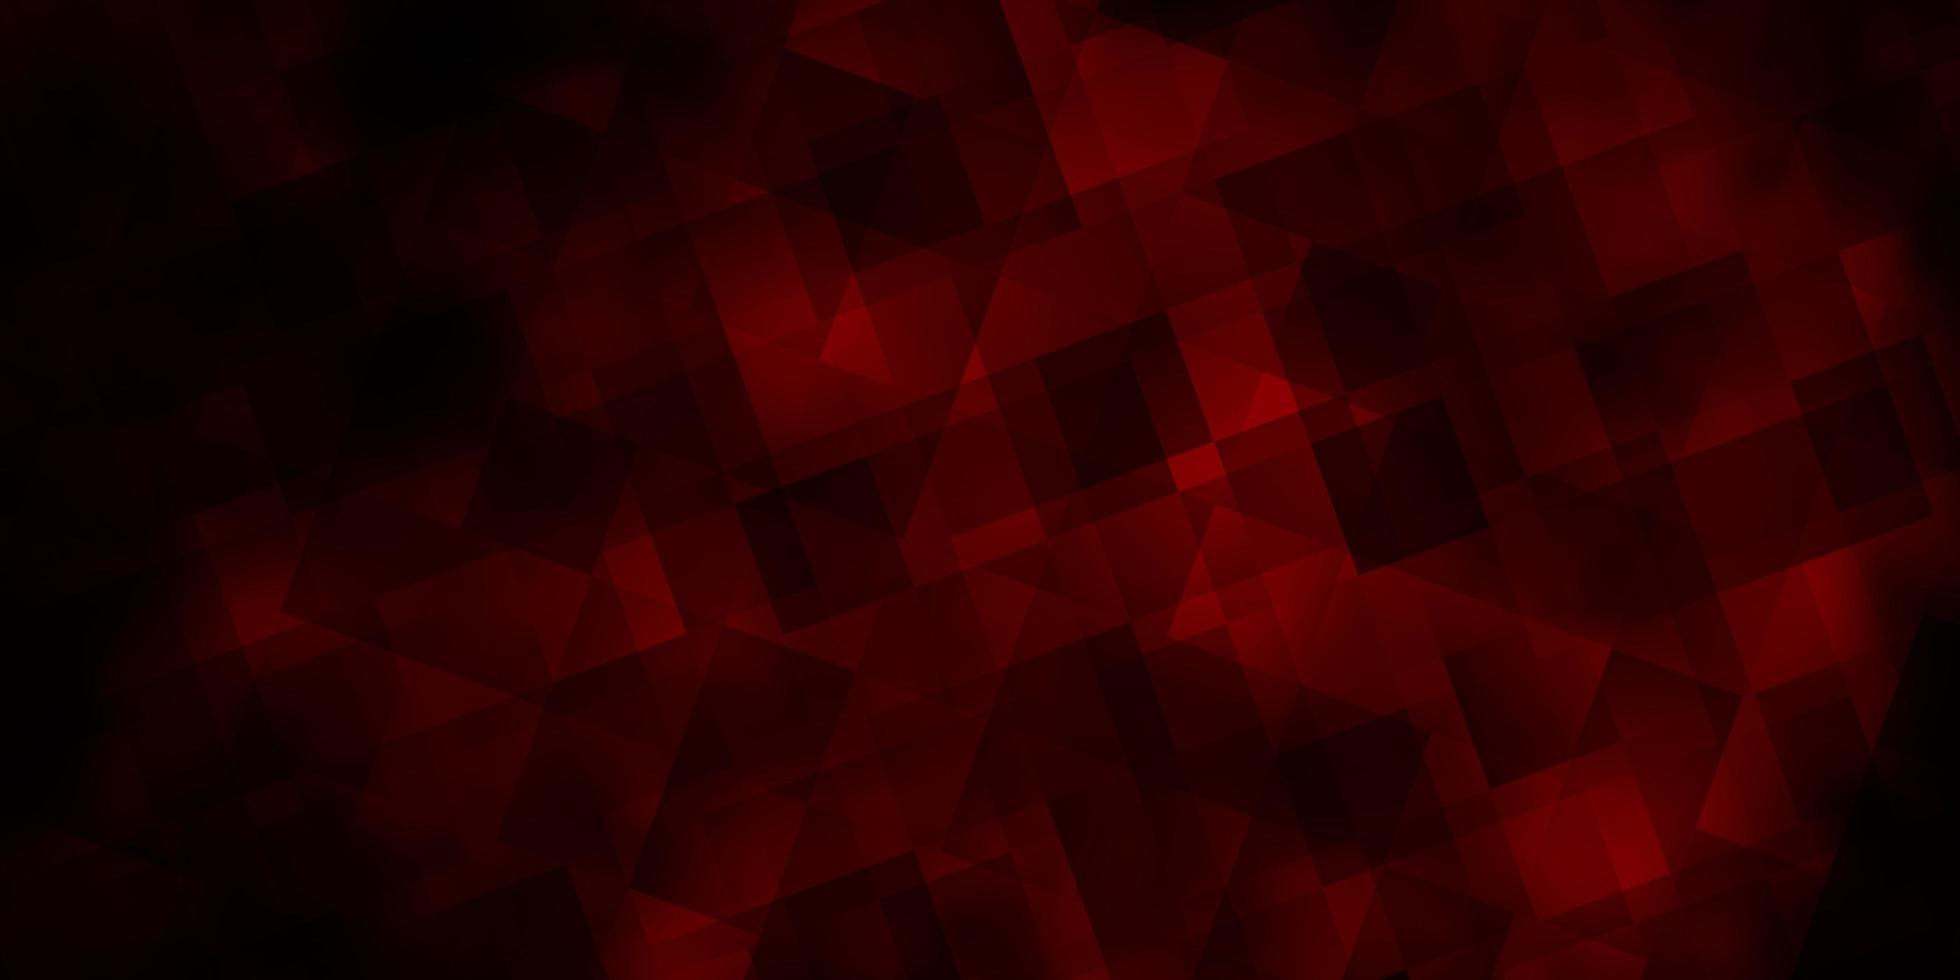 sfondo vettoriale rosso scuro con stile poligonale.